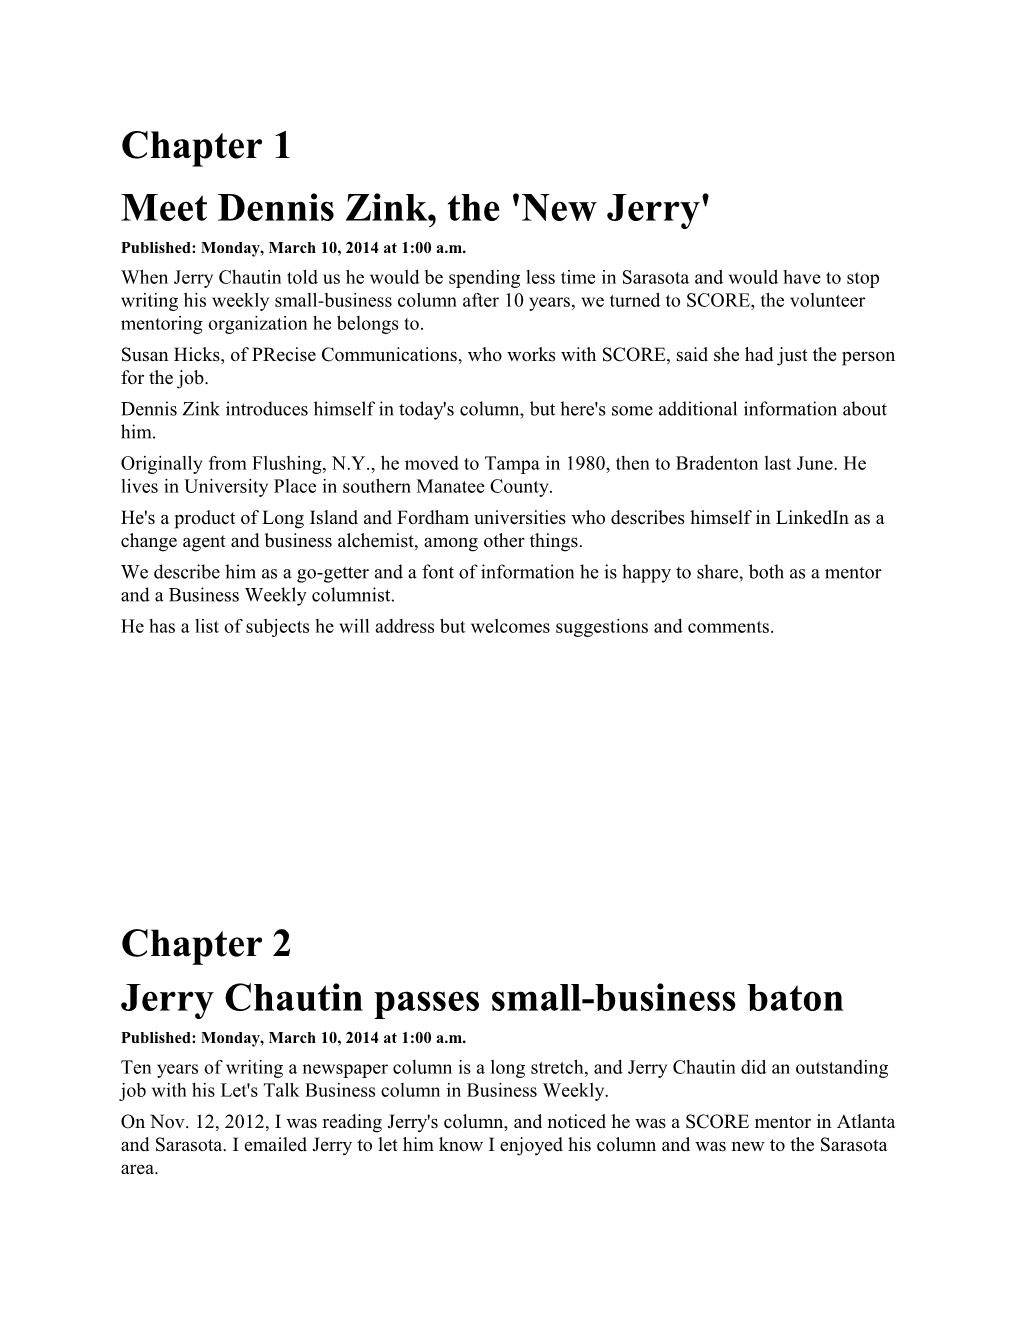 Meet Dennis Zink, the 'New Jerry'